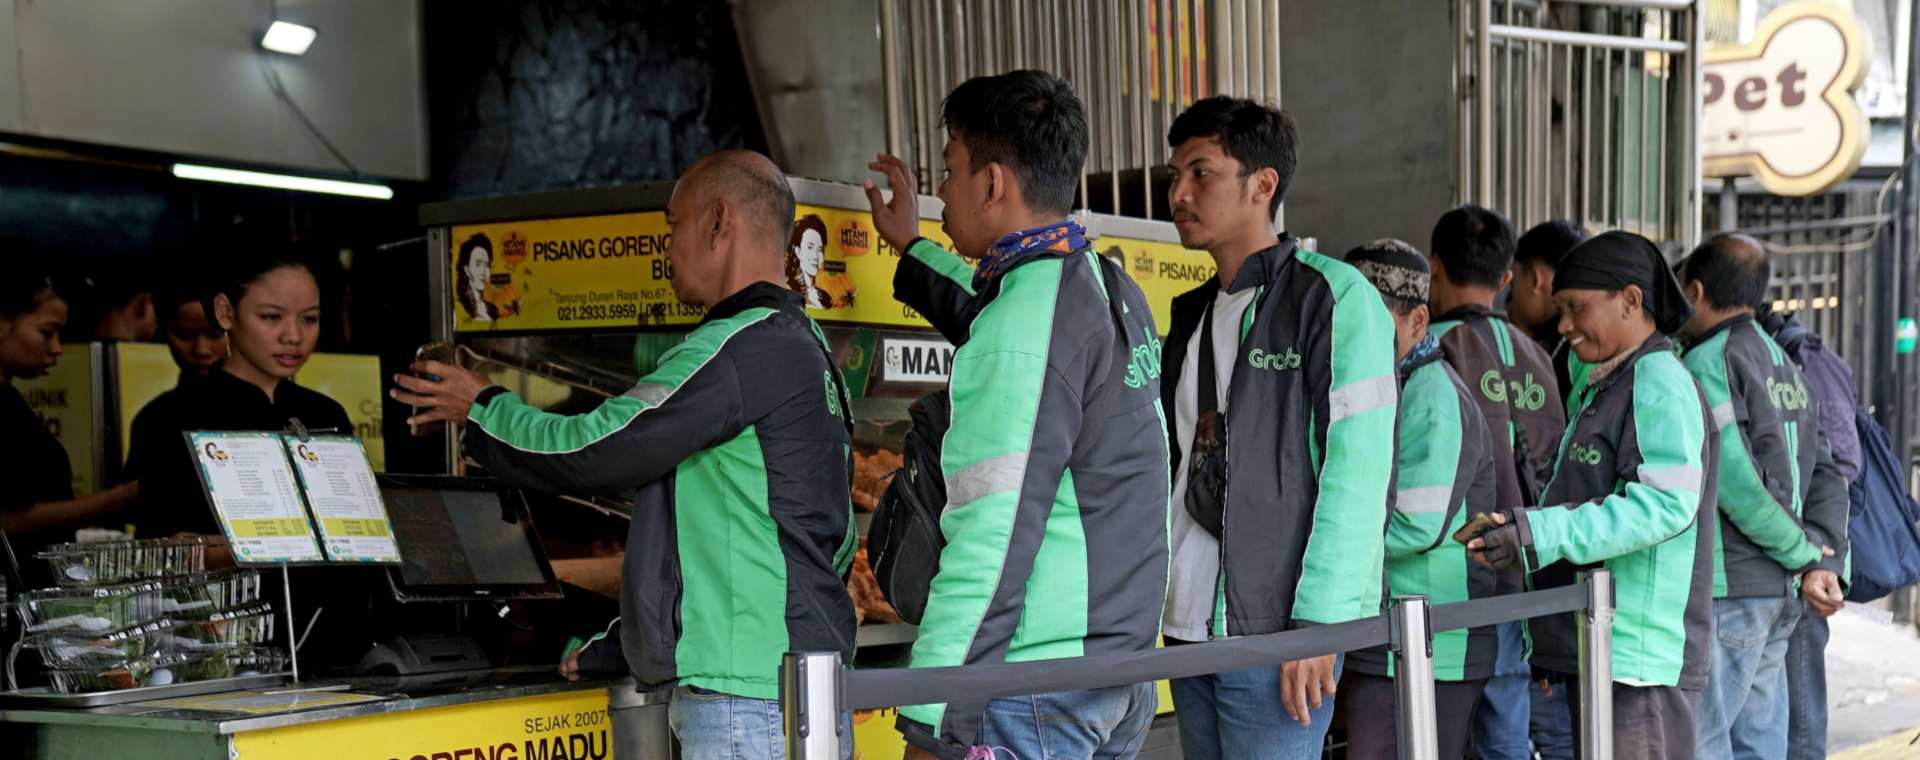 Driver GrabFood dari Grab Holdings Inc. berbaris untuk mengambil pesanan di toko Pisang Goreng Bu Nanik di Jakarta, Indonesia, pada Senin, 15 Juli 2019.  - Bloomberg